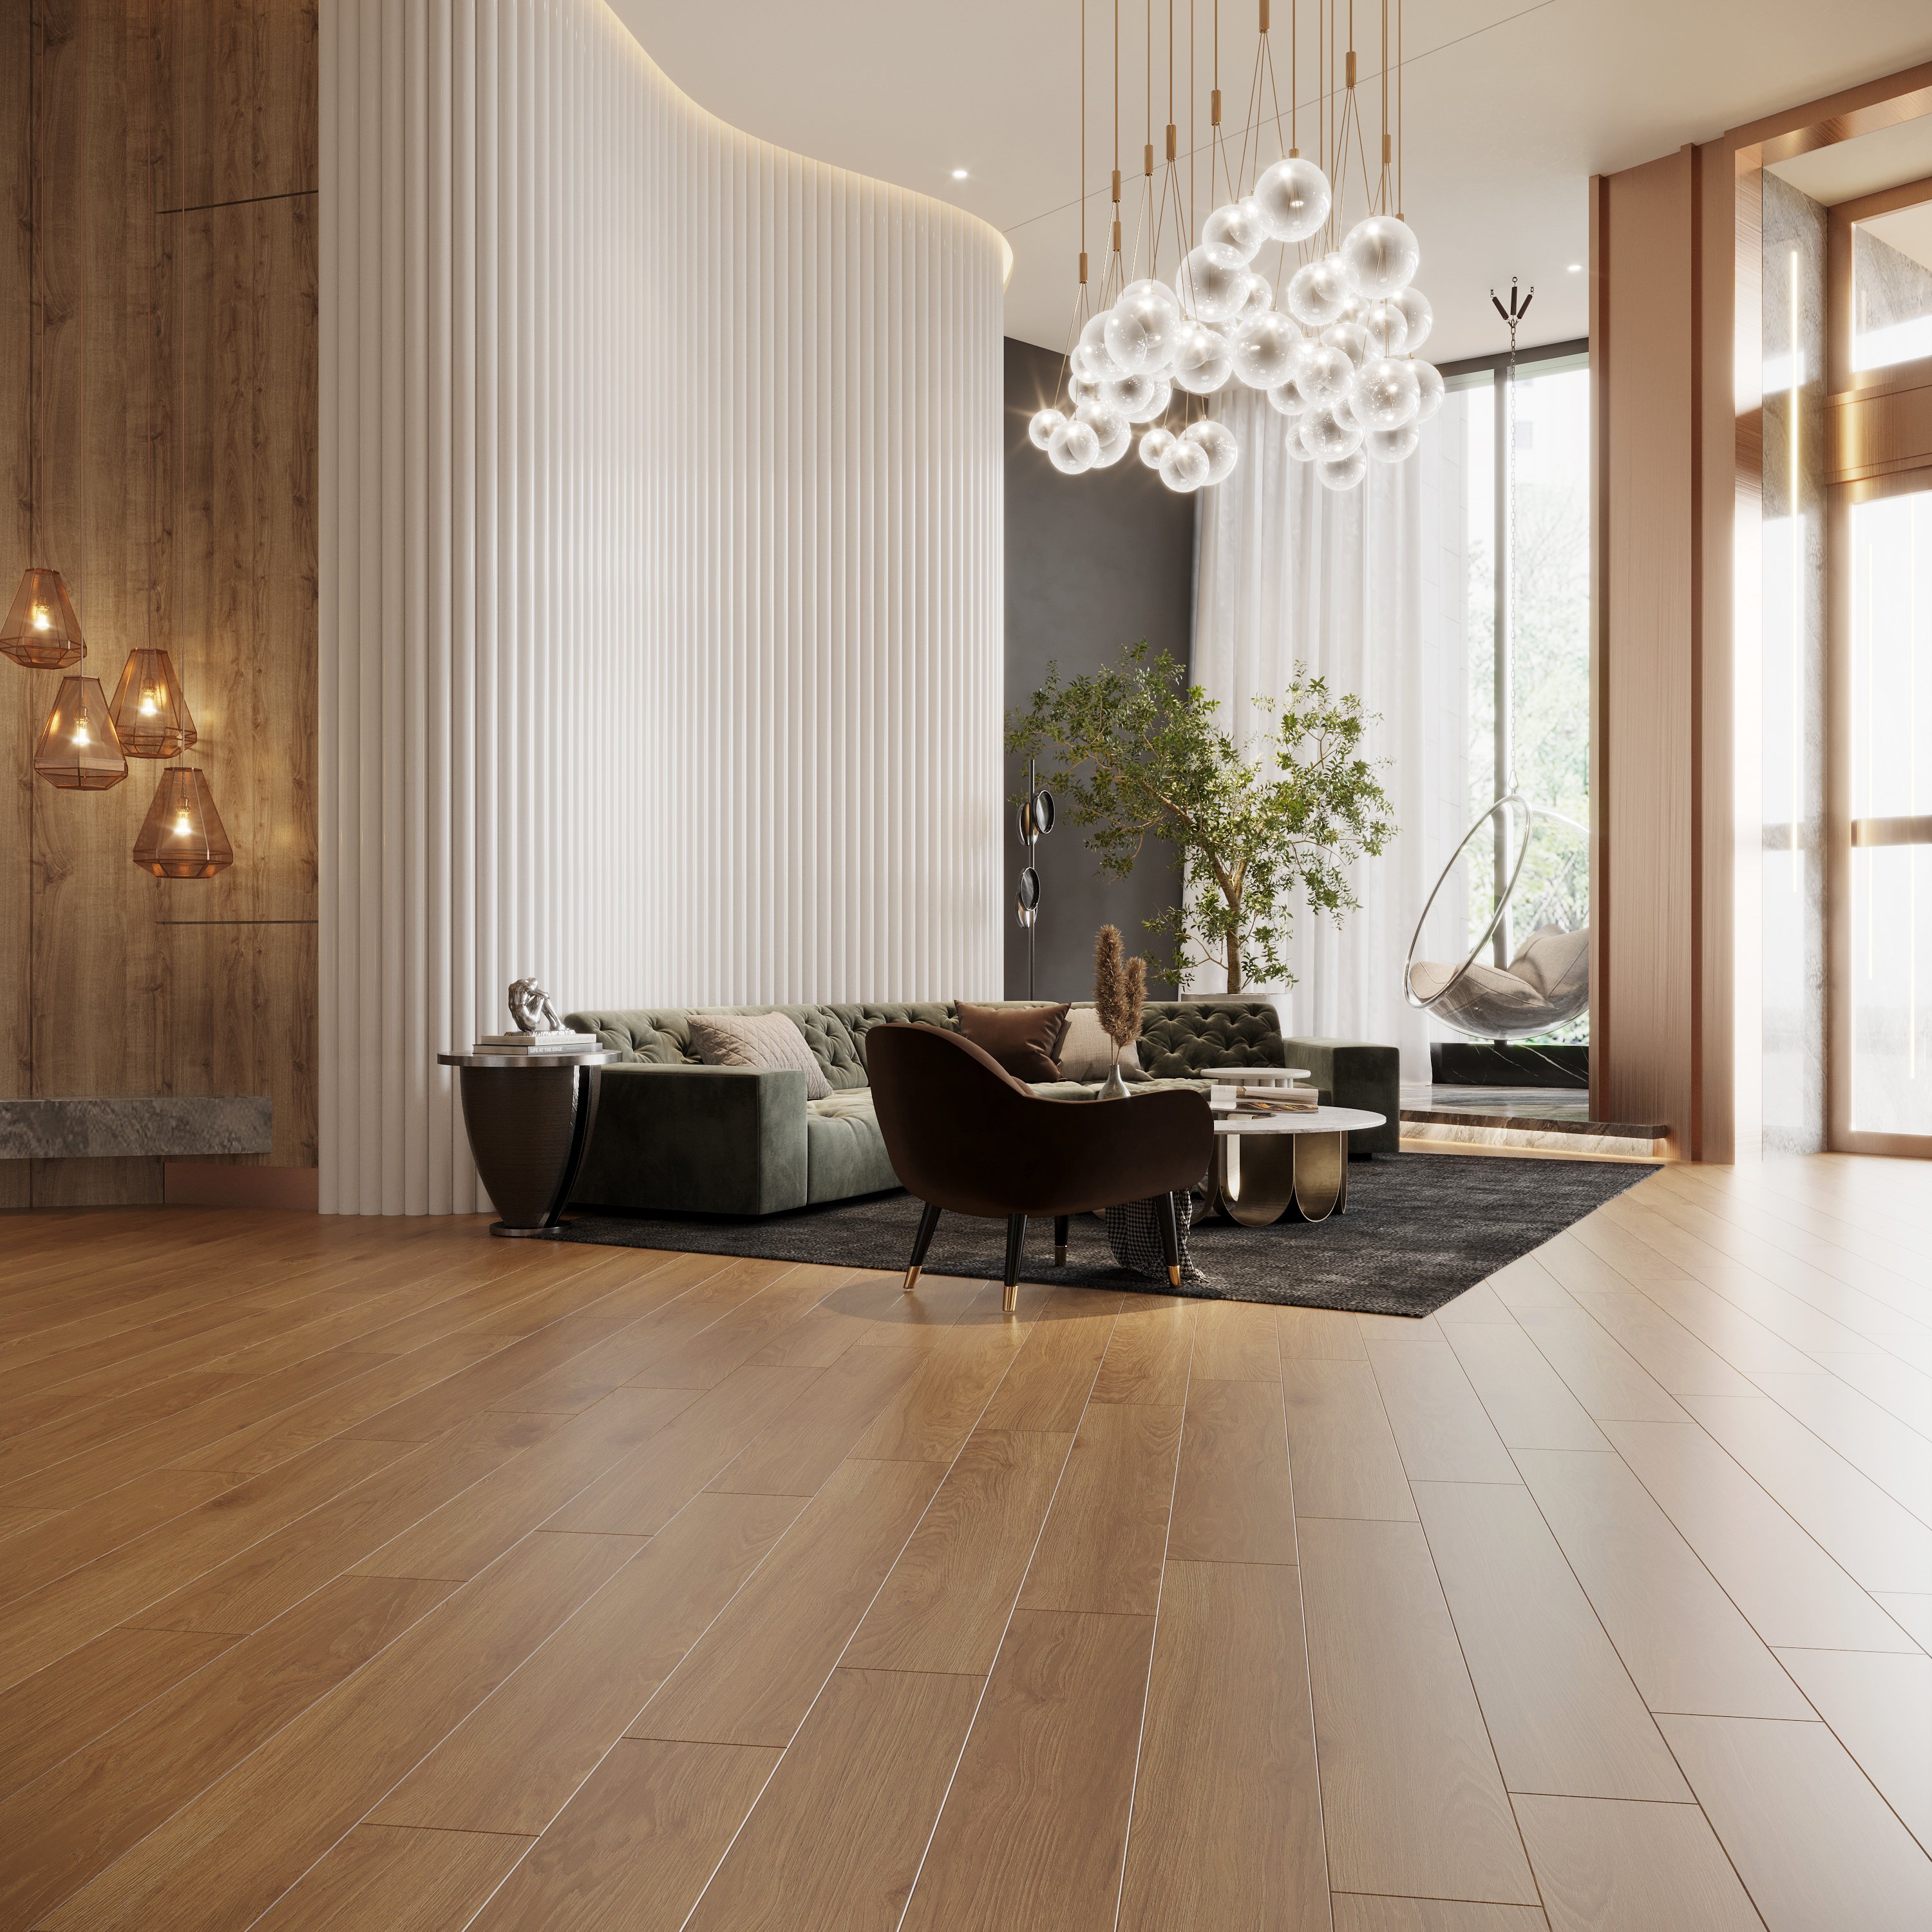 5 mẫu sàn gỗ công nghiệp không thể bỏ qua cho phong cách Bauhaus 2